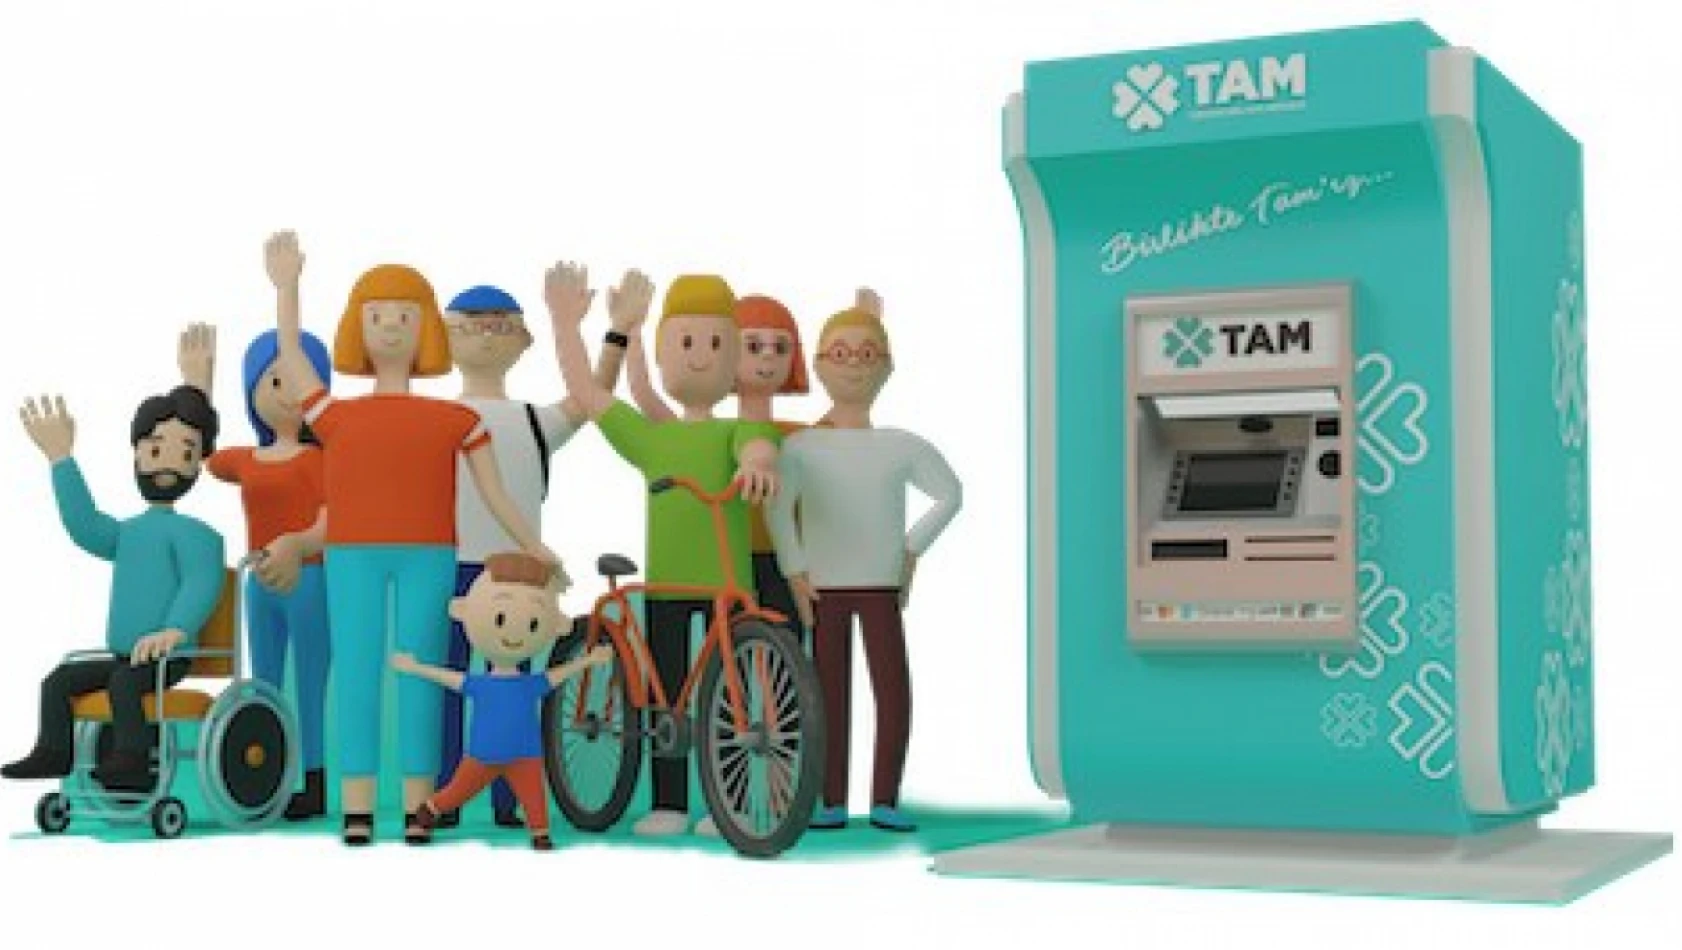 7 kamu bankasının hizmeti tek ATM'de buluştu